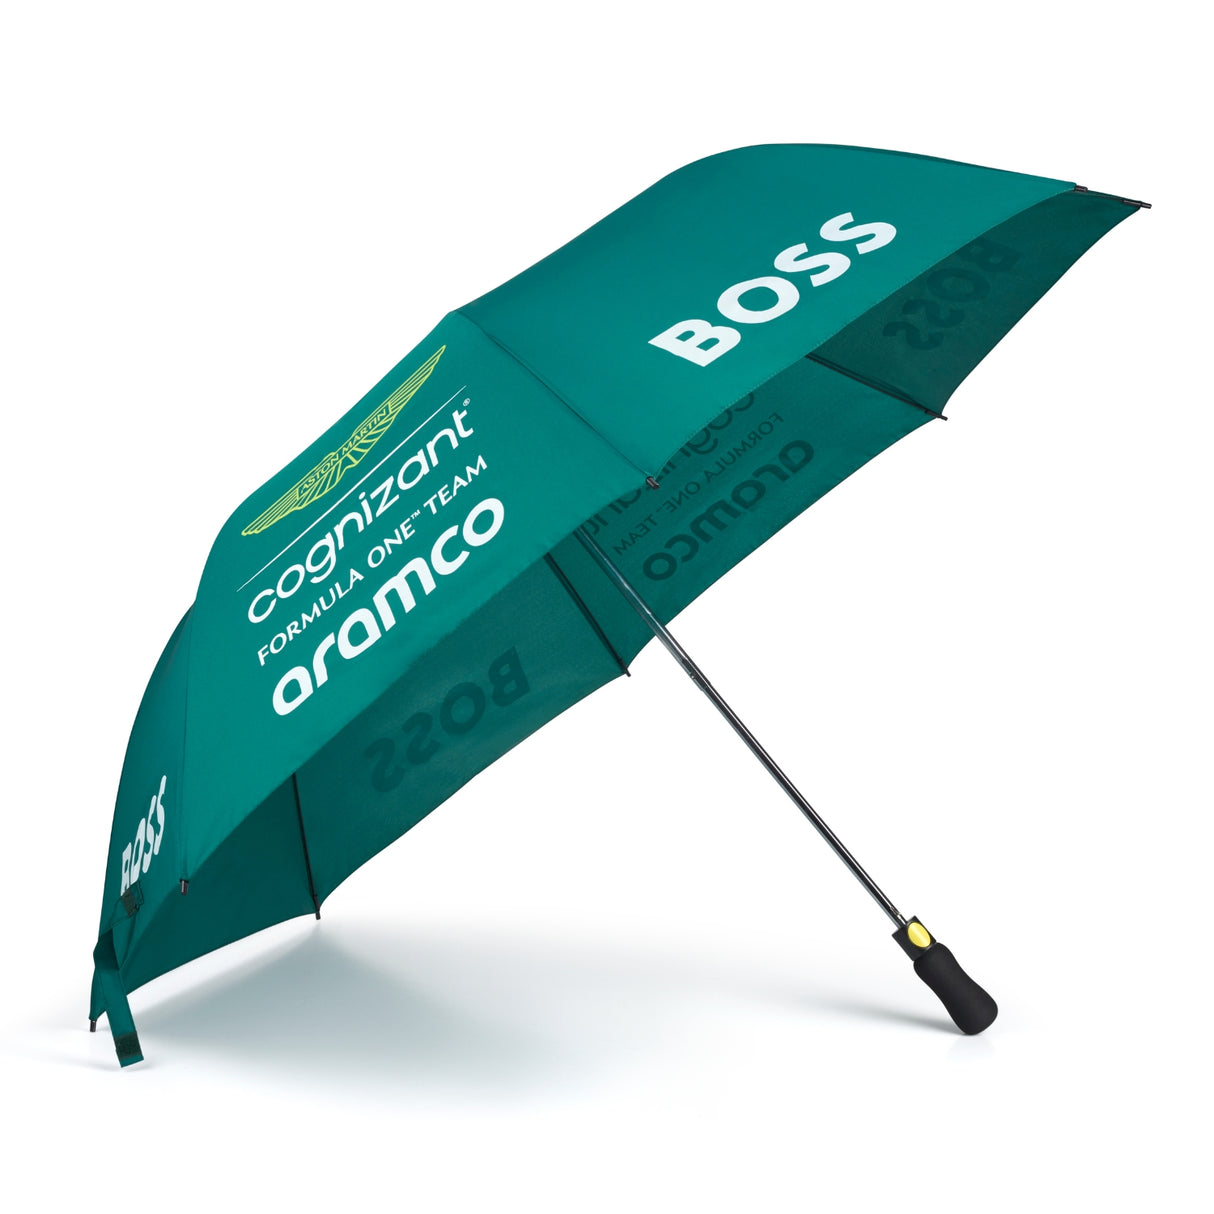 Aston Martin telescopic umbrella, green, 2023